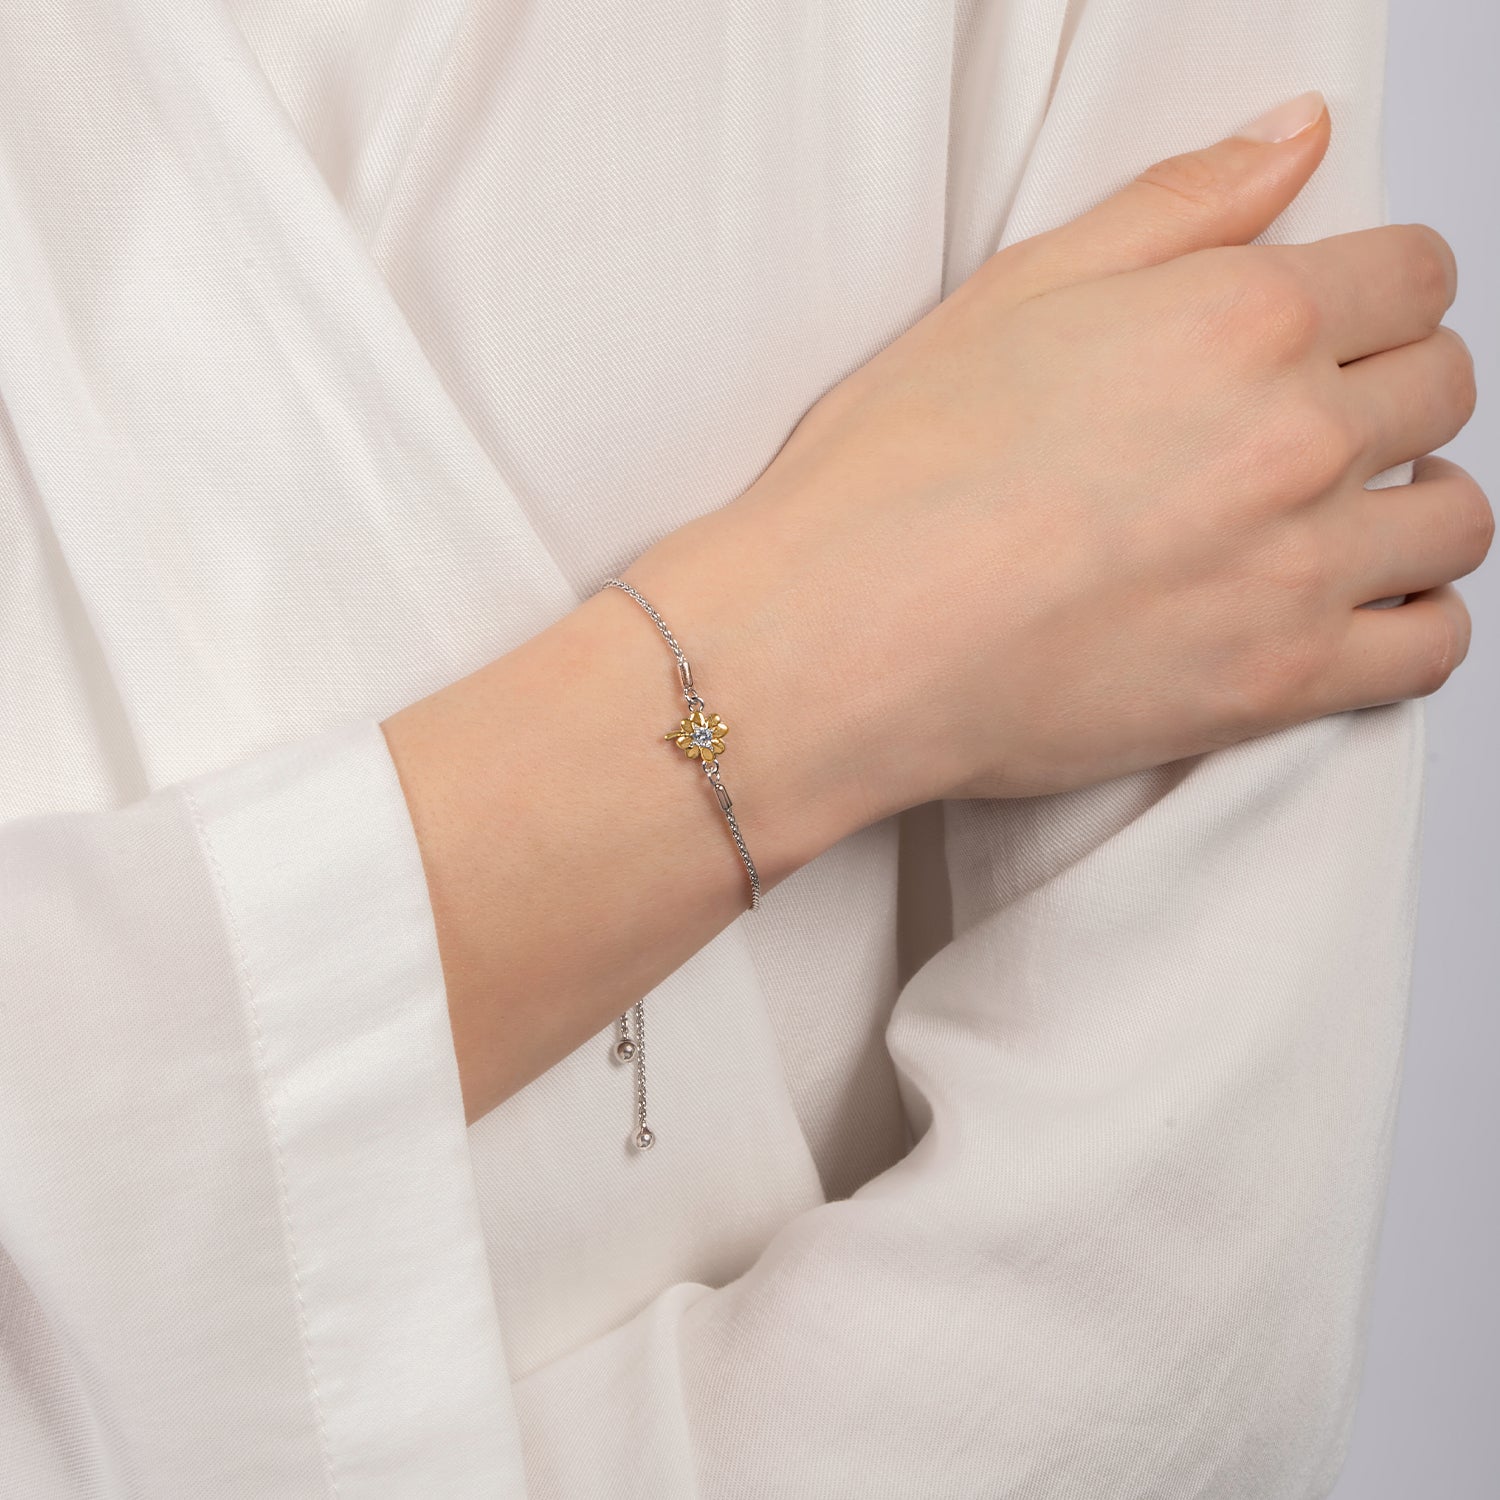 14K Real Solid Gold Four Leaf Clover Bracelet for Women